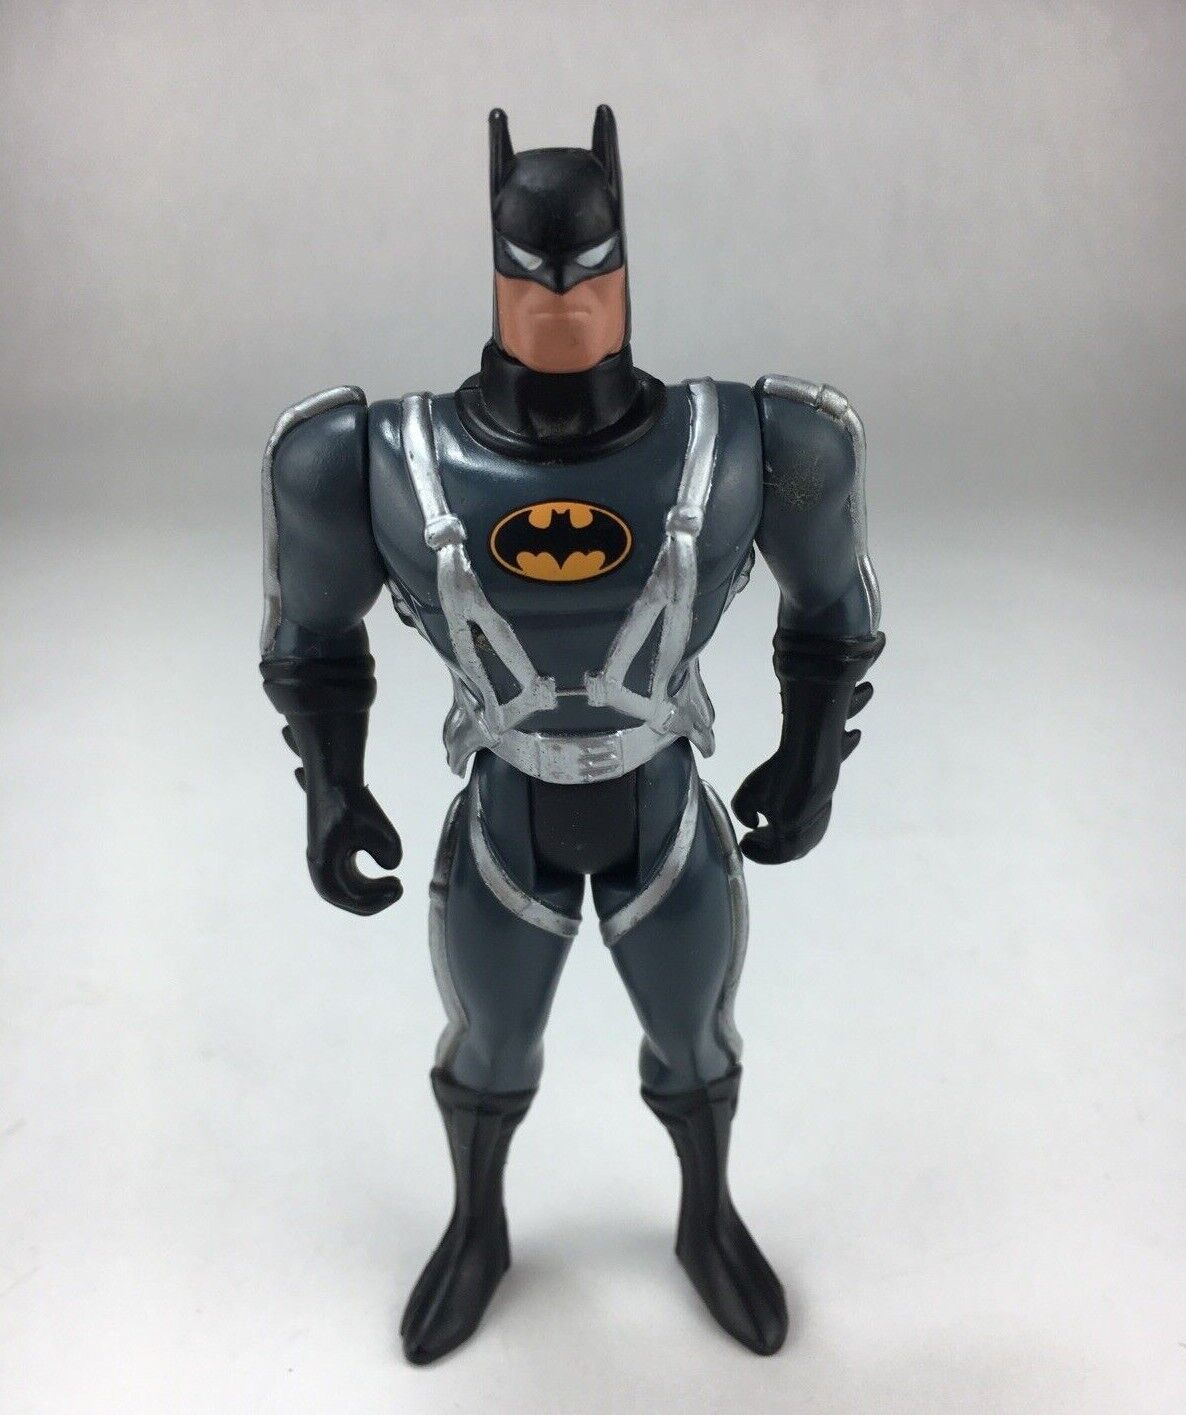 Vintage 1993 TM Kenner DC Comics Batman 4.75 Inch Action Figure Collectible